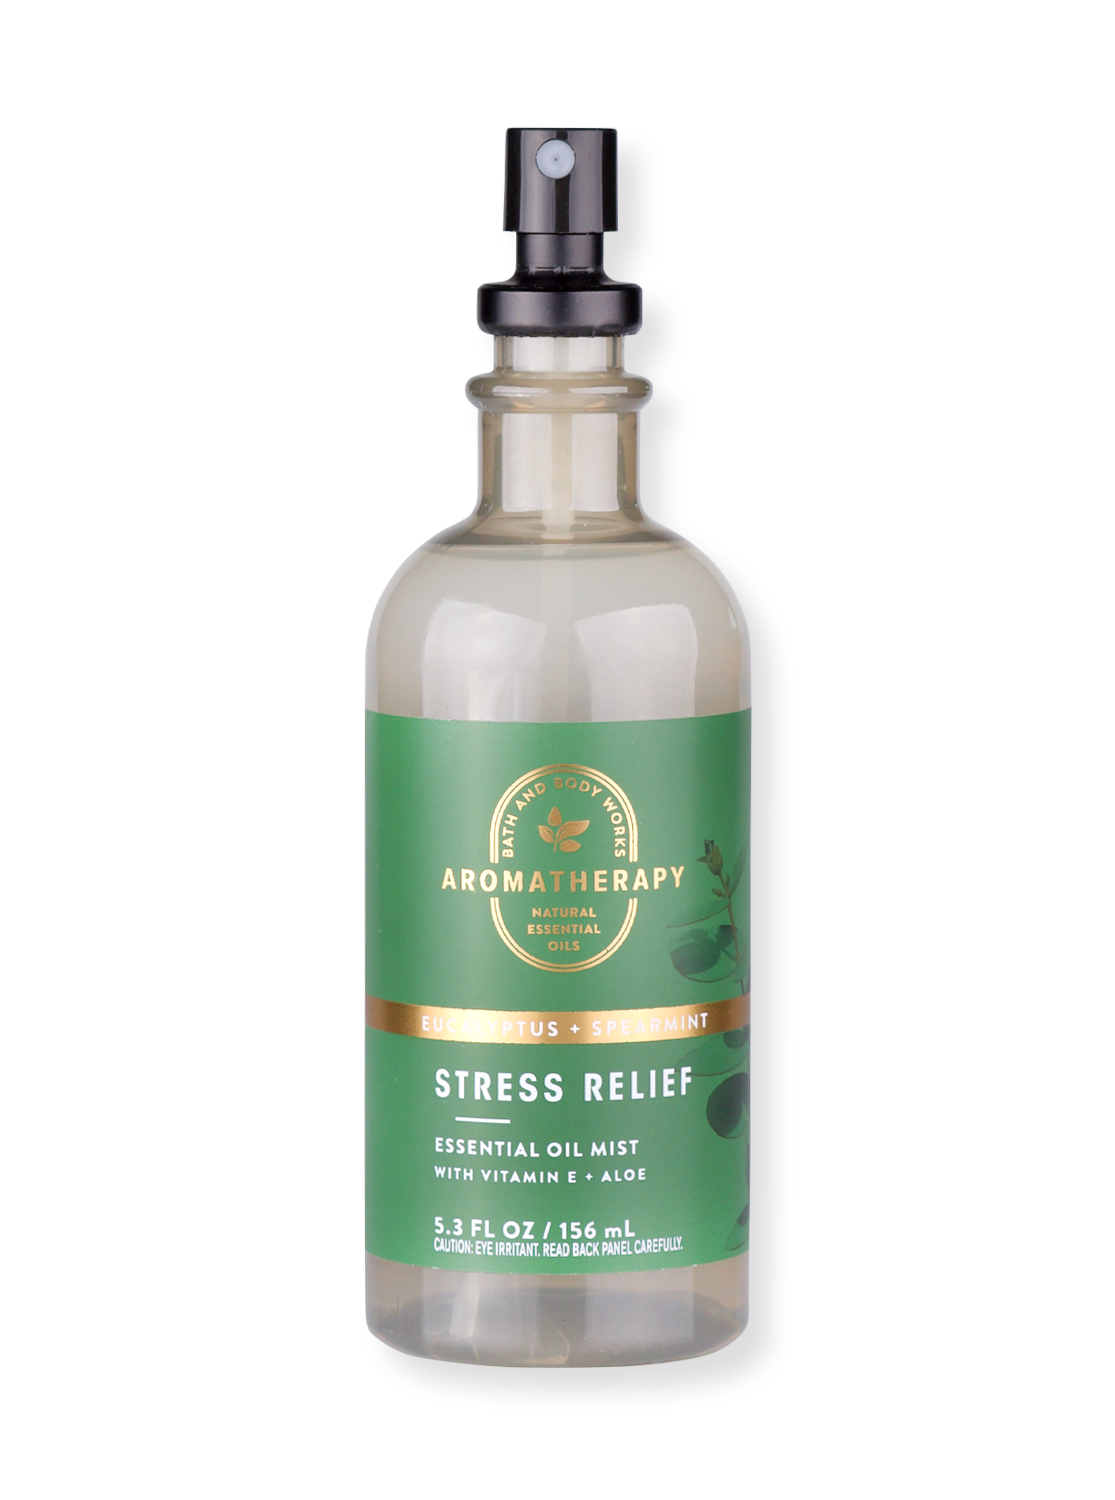 Body Spray / Pillow Mist - Aromatherapy - Stress Relief - Eucalyptus & Spearmint - 156 ml